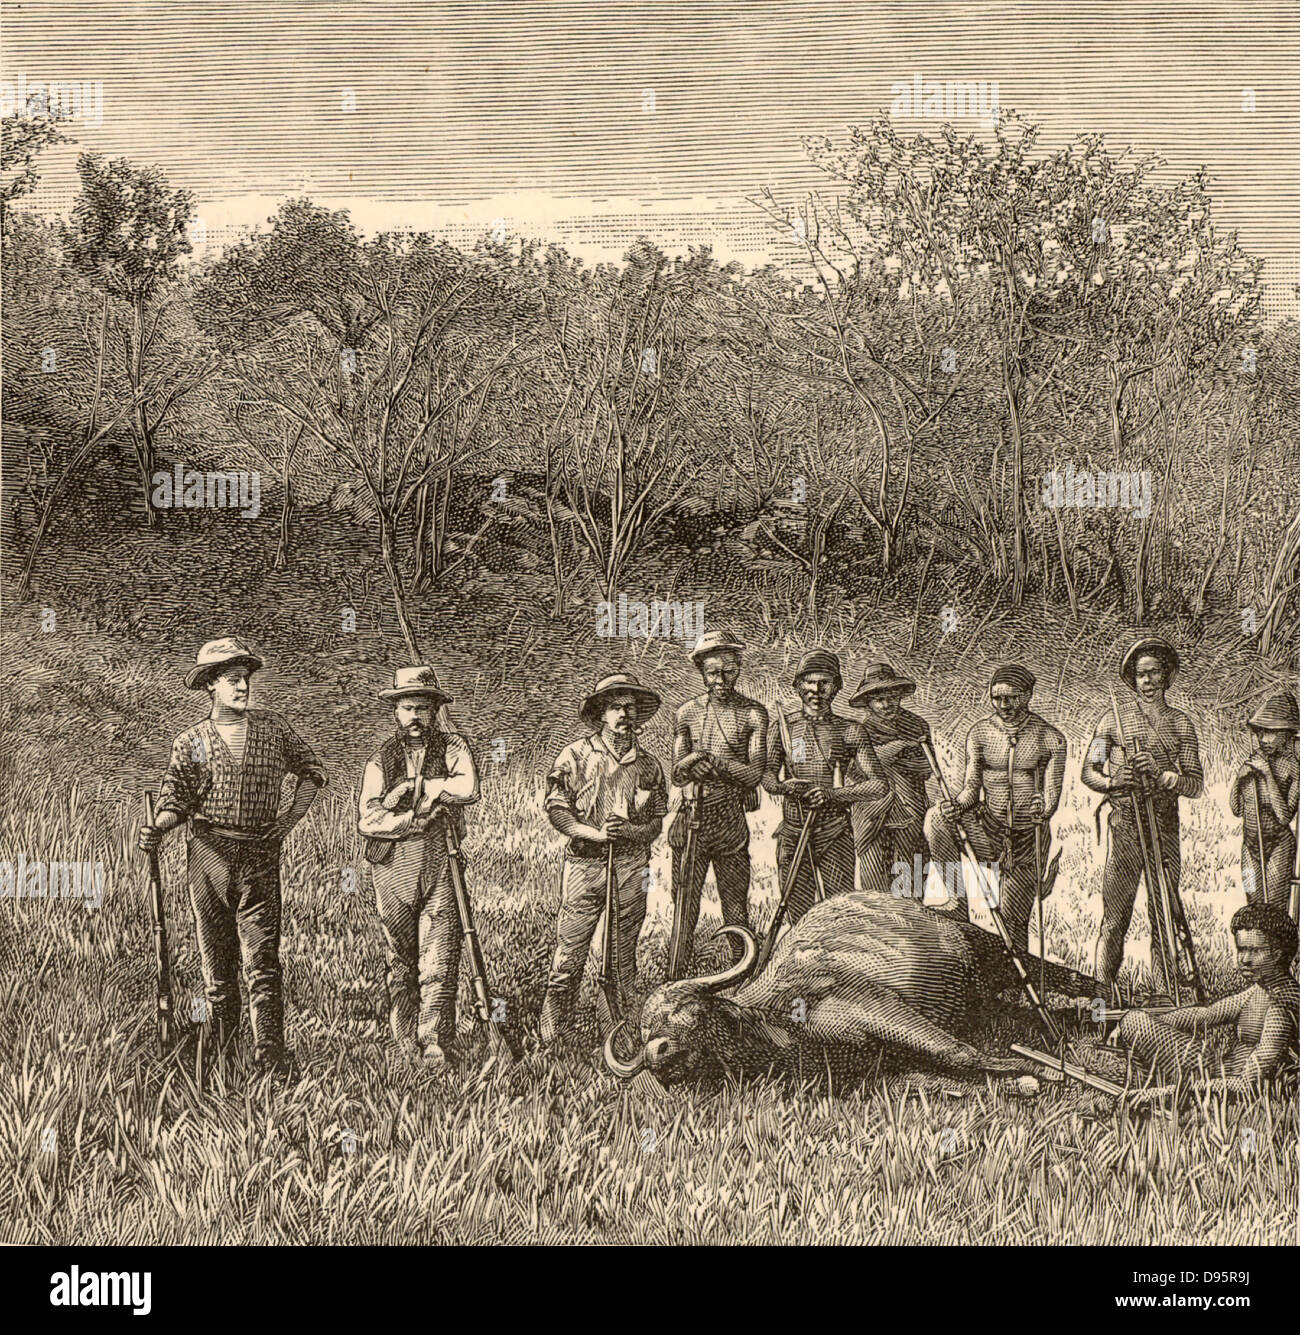 Großwildjagd in Transvaal, Afrika.  Posieren auf einem Büffel Jäger erschossen haben. Holzstich c1890. Stockfoto